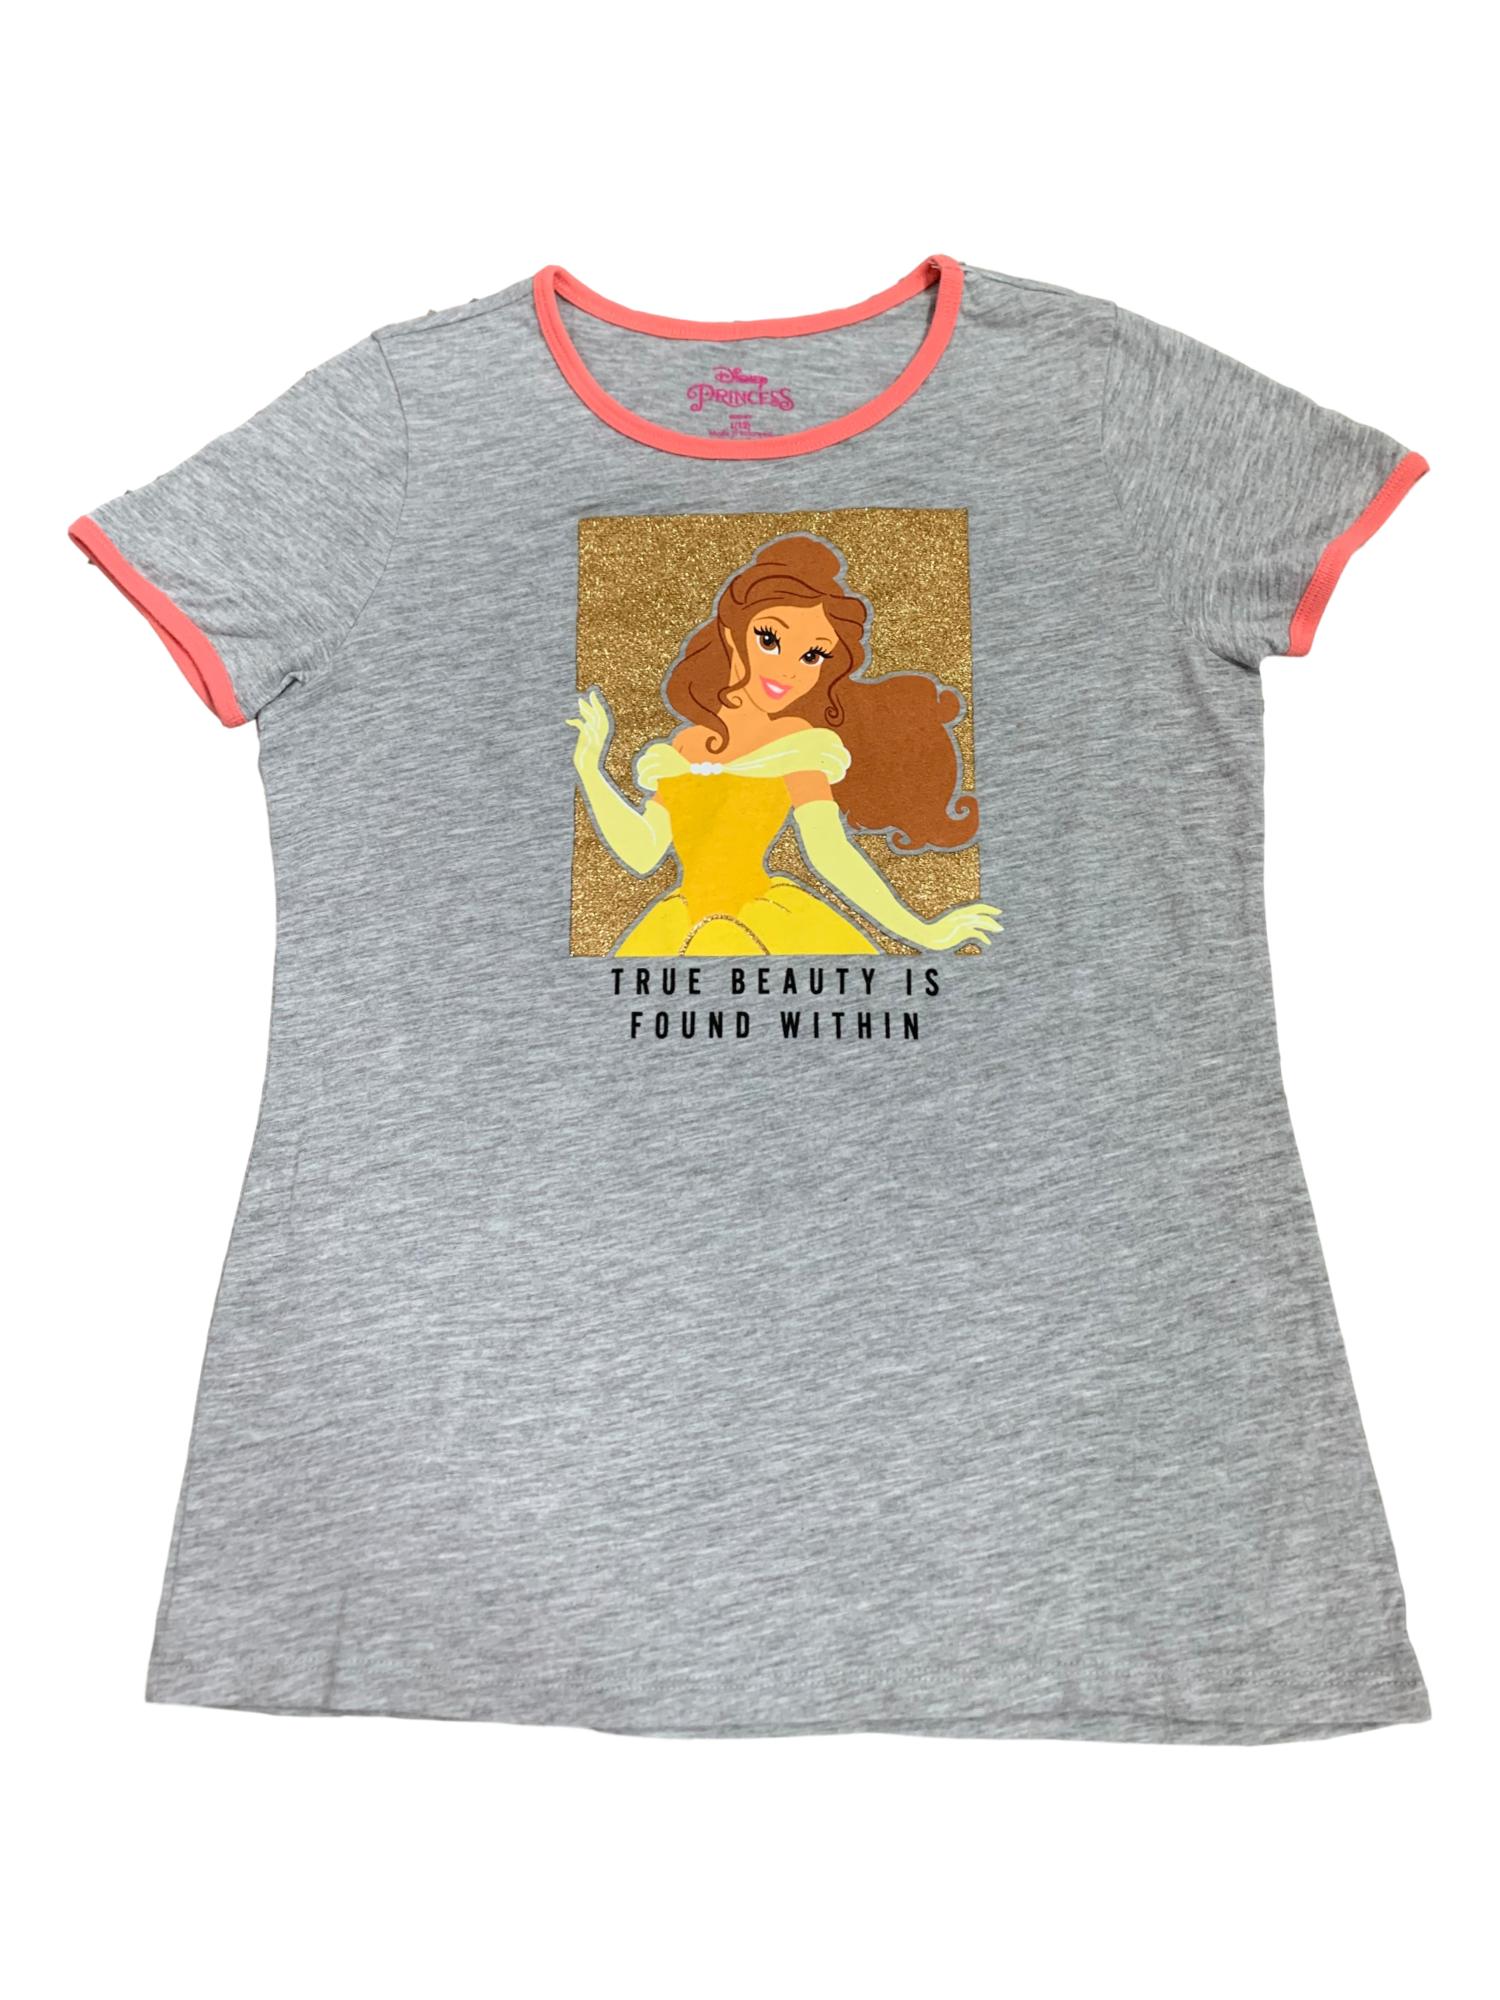 Disney Princess Belle Girls Gray & Gold Glitter Short Sleeve T-Shirt L 12